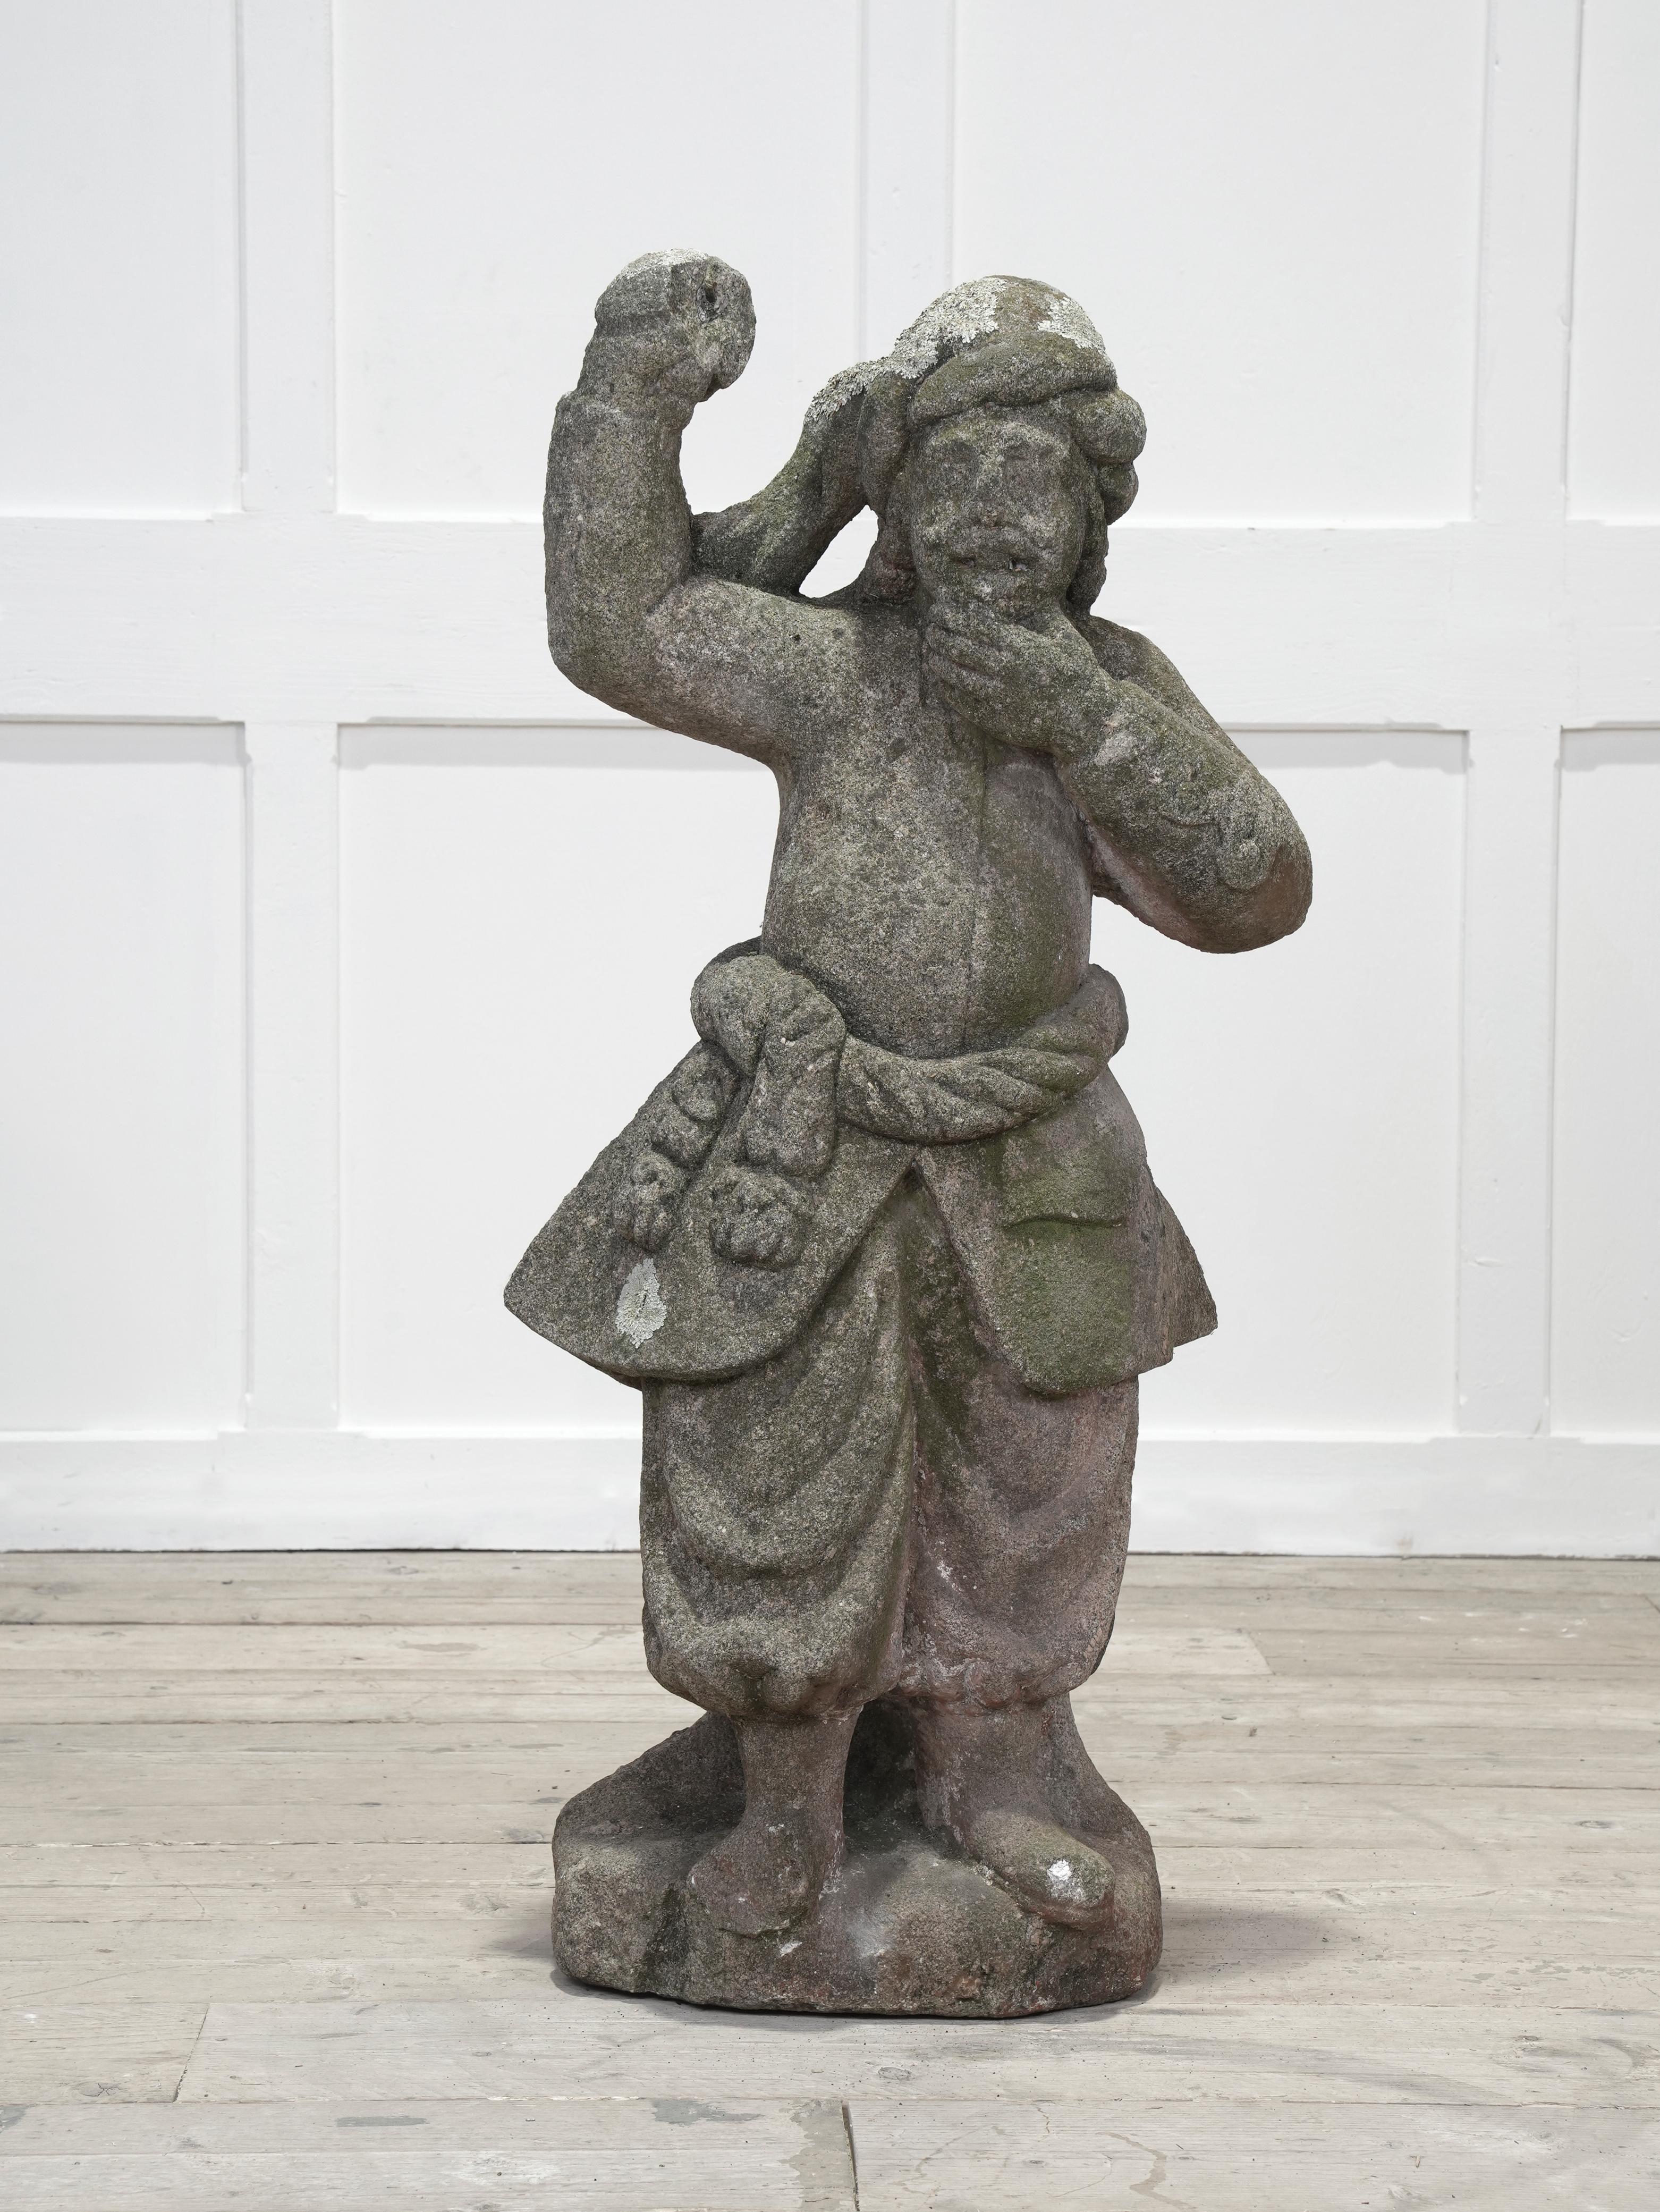 Eine geschnitzte Schottersteinfigur eines türkischen Kriegers in traditioneller Kleidung, der mit einer erhobenen Hand ein Bronzeschwert hält.

Niederländische Länder, Mitte des 18. Jahrhunderts.